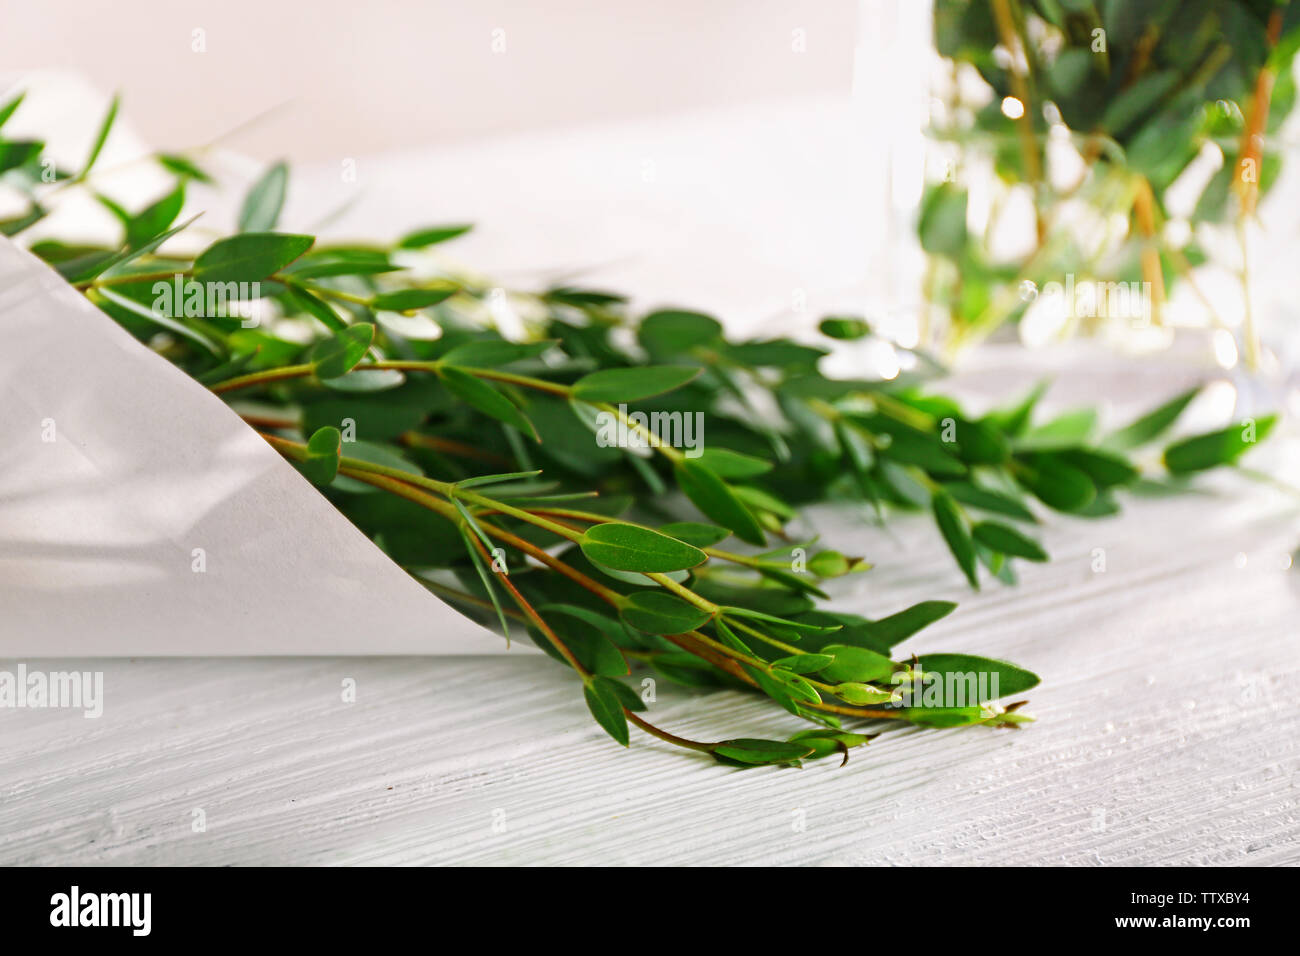 Green eucalyptus branches, closeup Stock Photo